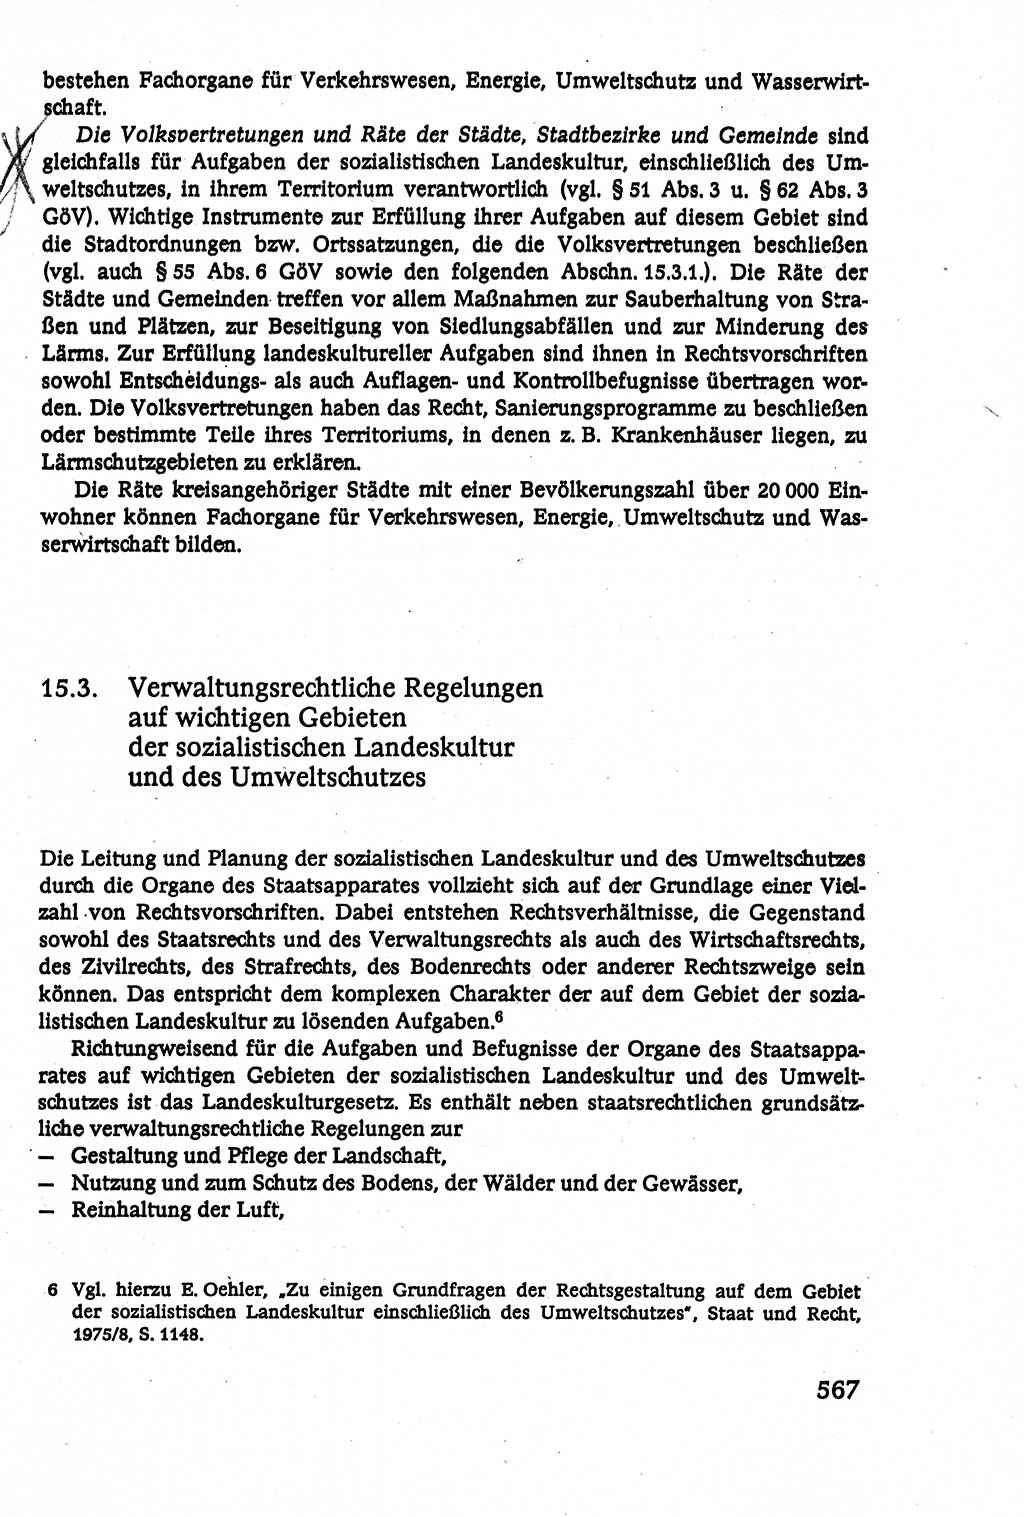 Verwaltungsrecht [Deutsche Demokratische Republik (DDR)], Lehrbuch 1979, Seite 567 (Verw.-R. DDR Lb. 1979, S. 567)